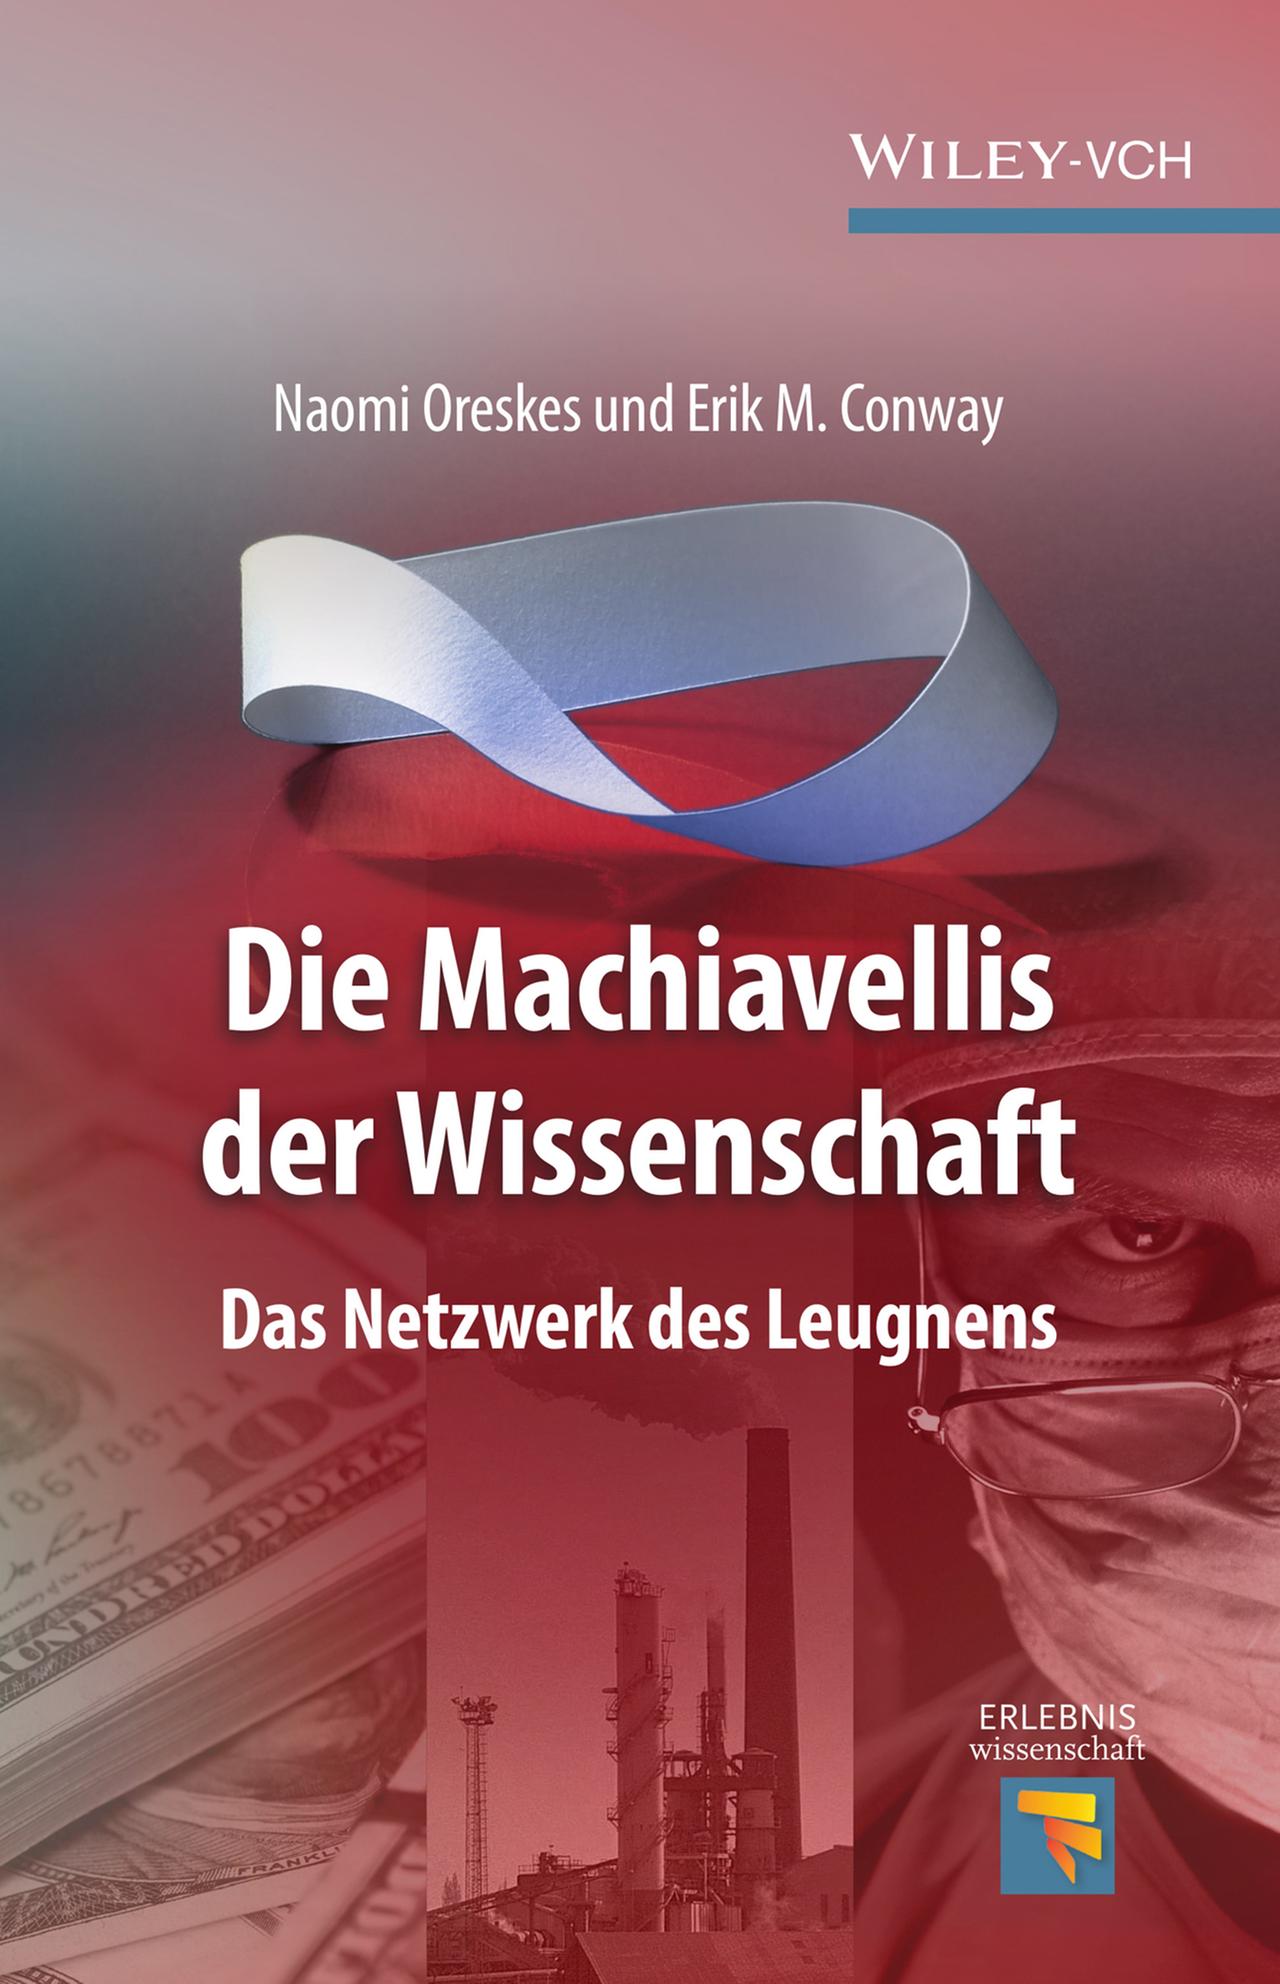 Coverfoto des Buches von Naomi Oreskes und Erik Conway: Die Machiavellis der Wissenschaft. Das Netzwerk des Leugnens